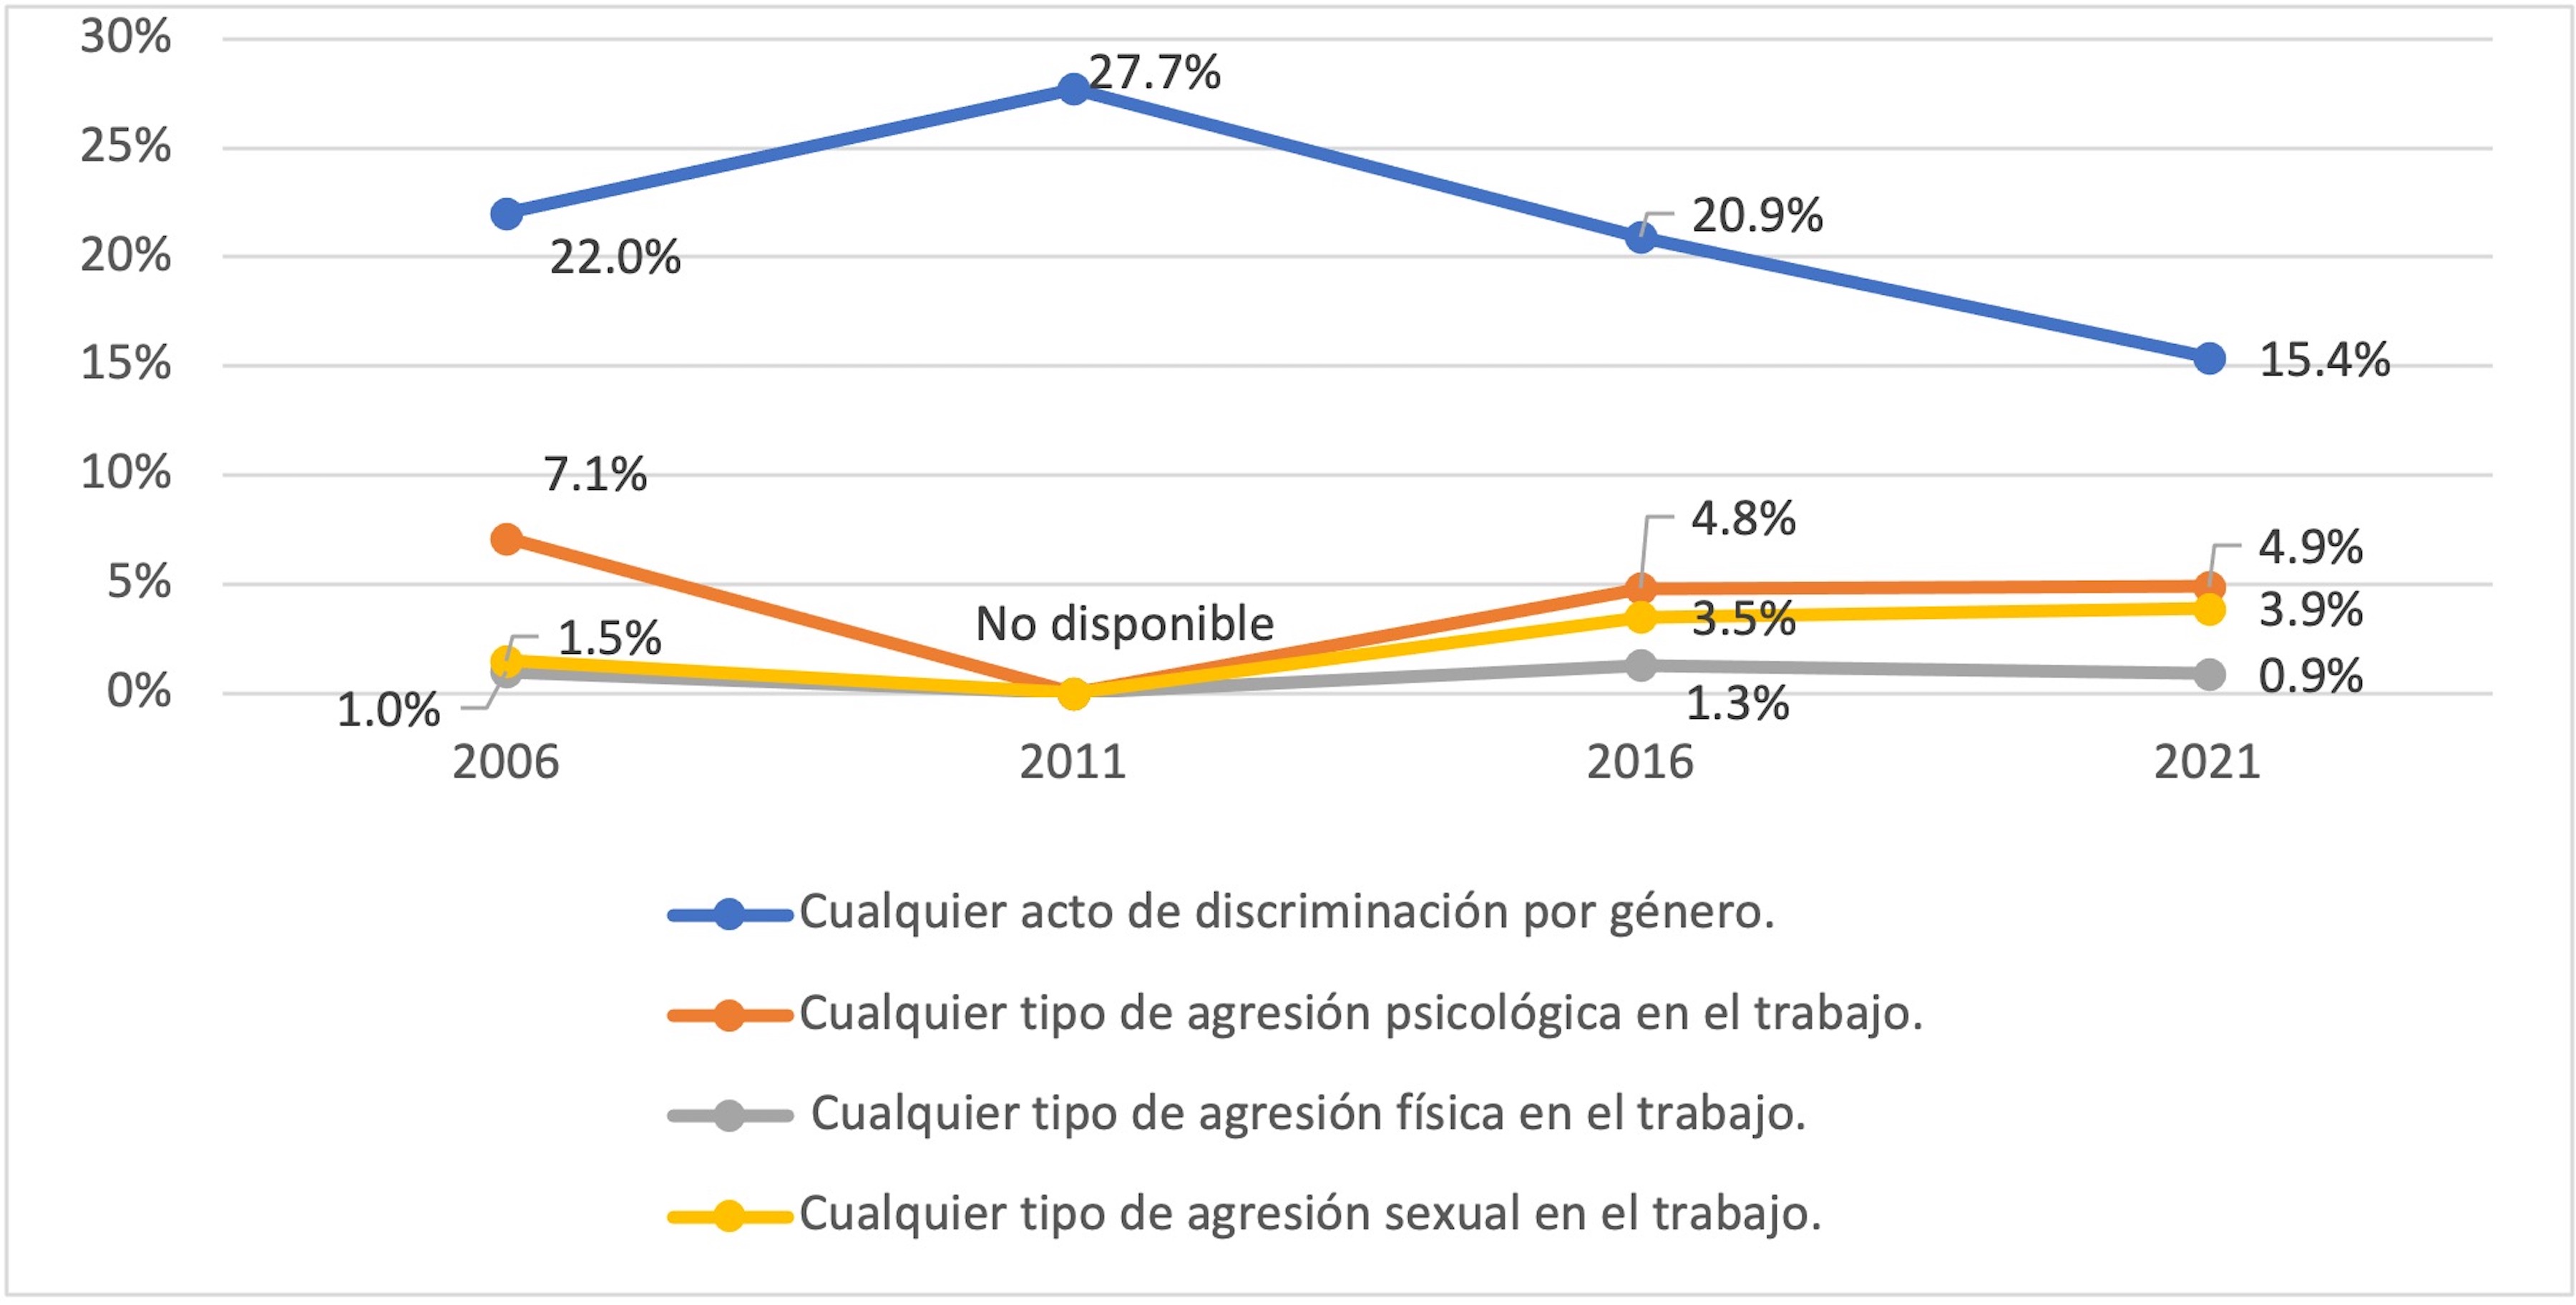 Prevalencia de violencia reciente en el ámbito laboral en las
mujeres de Chihuahua 2006-2021